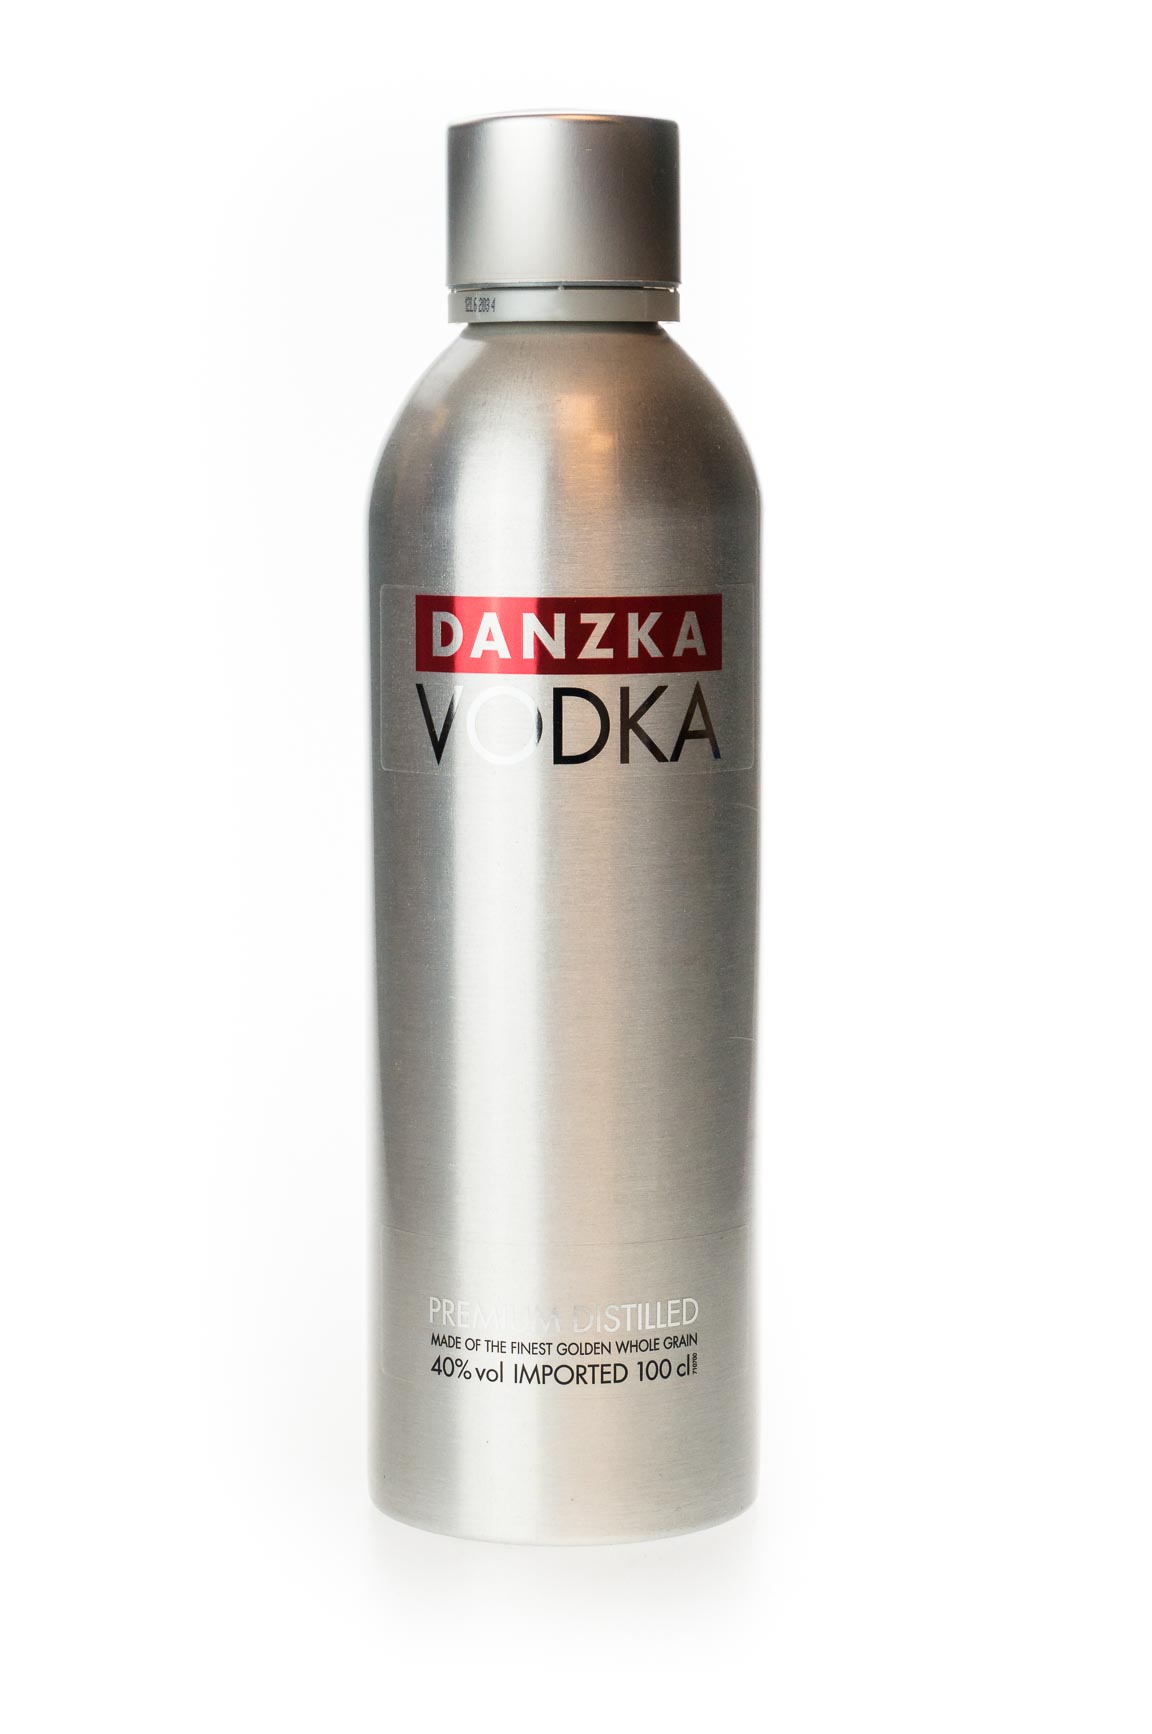 Danzka Vodka Premium Distilled (1L) günstig kaufen